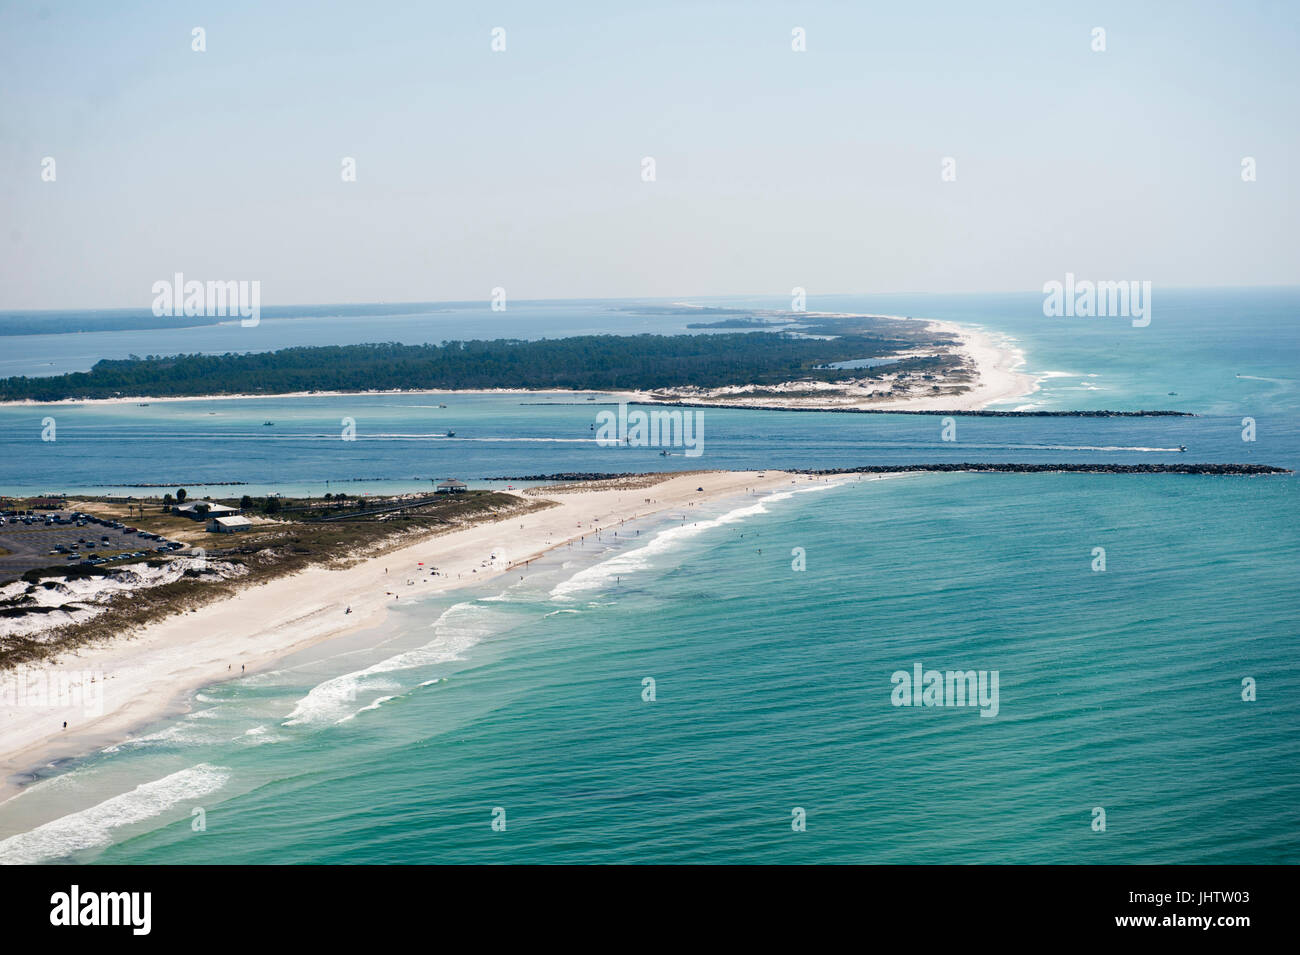 Una veduta aerea del litorale di Panama City Beach Florida presso Shell isola dove st Andrews Bay si svuota nel Golfo del Messico Foto Stock